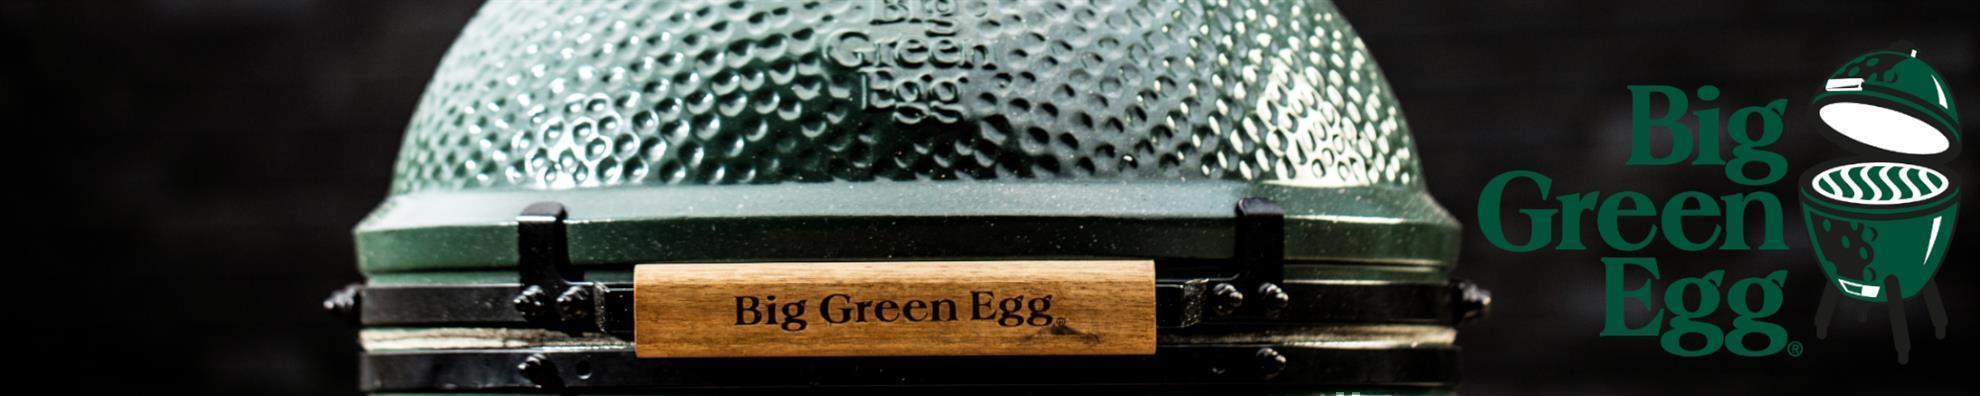 Big Green Egg - 2XL